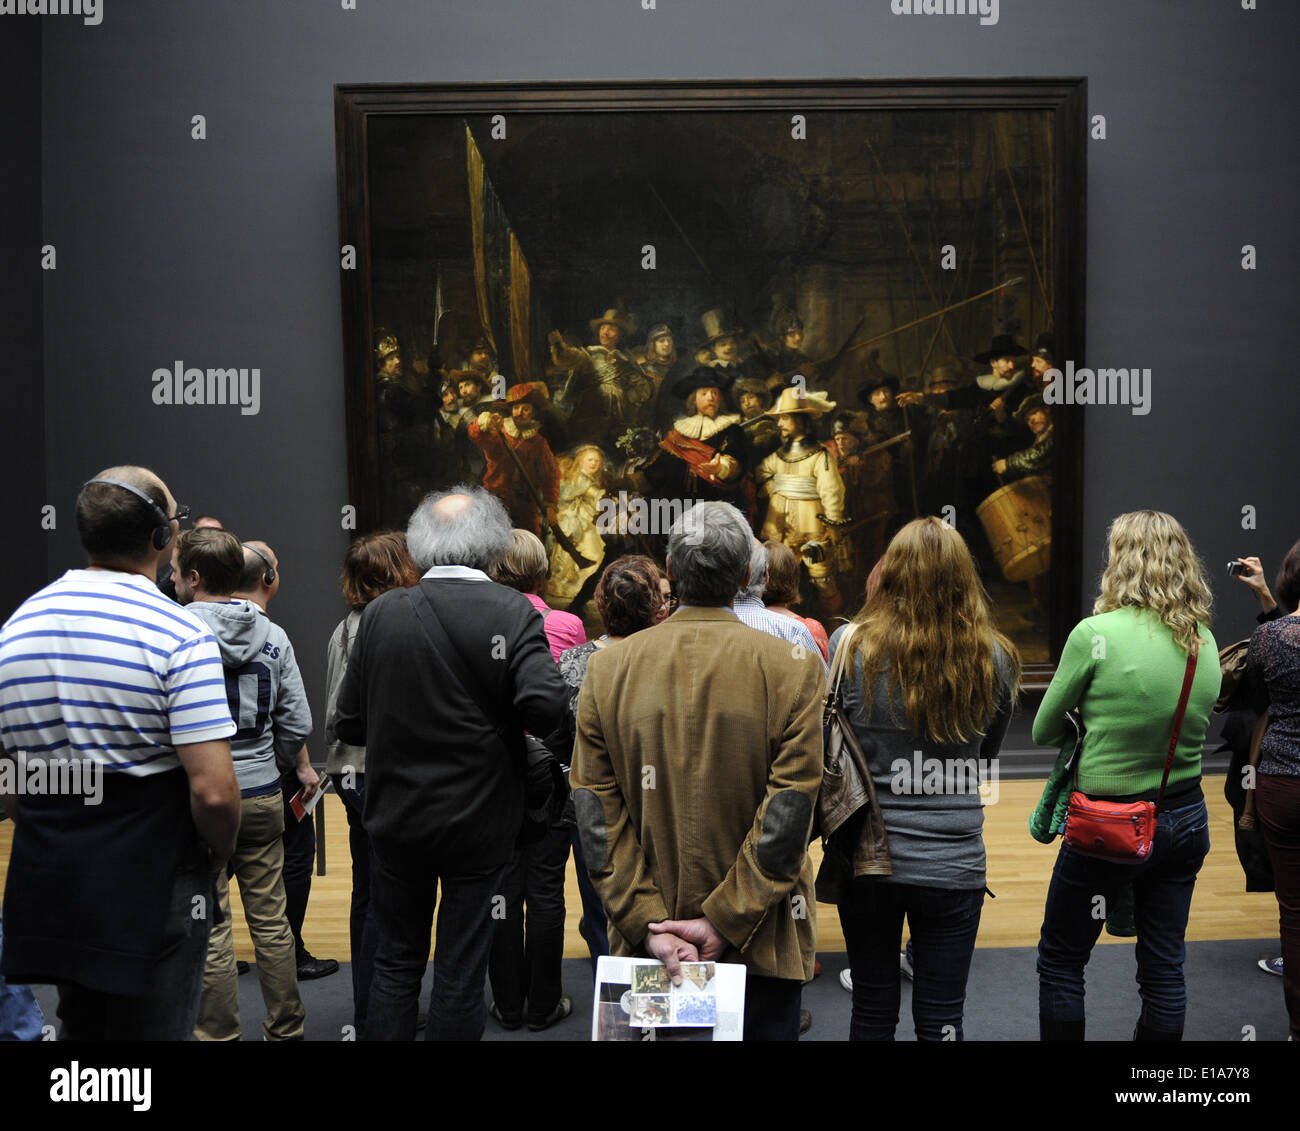 Les visiteurs qui cherchent à La Ronde de nuit de Rembrandt (1606-1669). Rijksmuseum. Amsterdam. Aux Pays-Bas. Banque D'Images